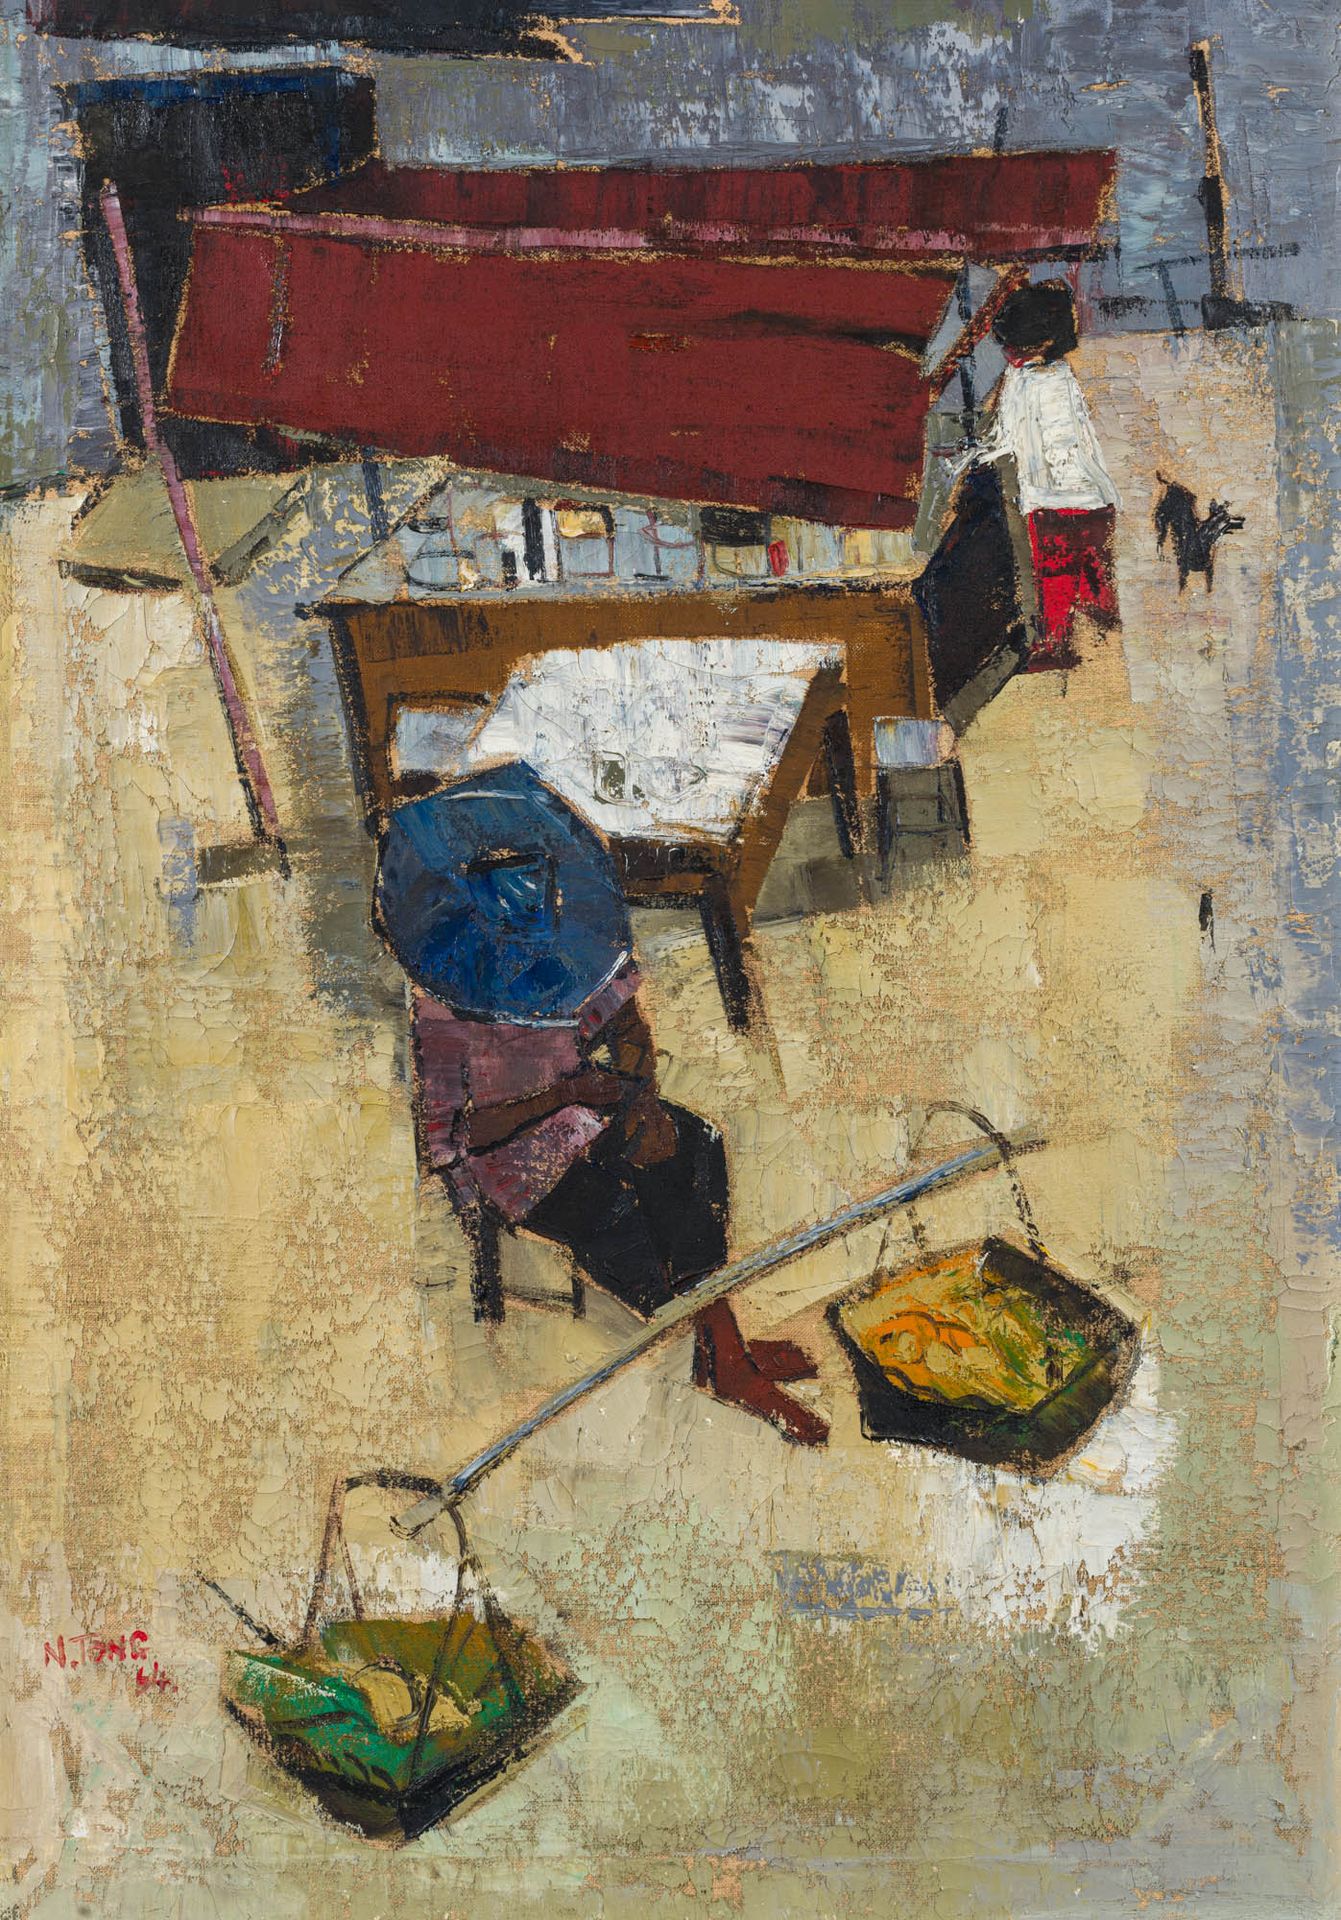 N. Tong 20. Jh. N.同20世纪。

市场，1964年

布面油画

左下角有签名和日期：N. TONG 64.

71 x 50,5 cm